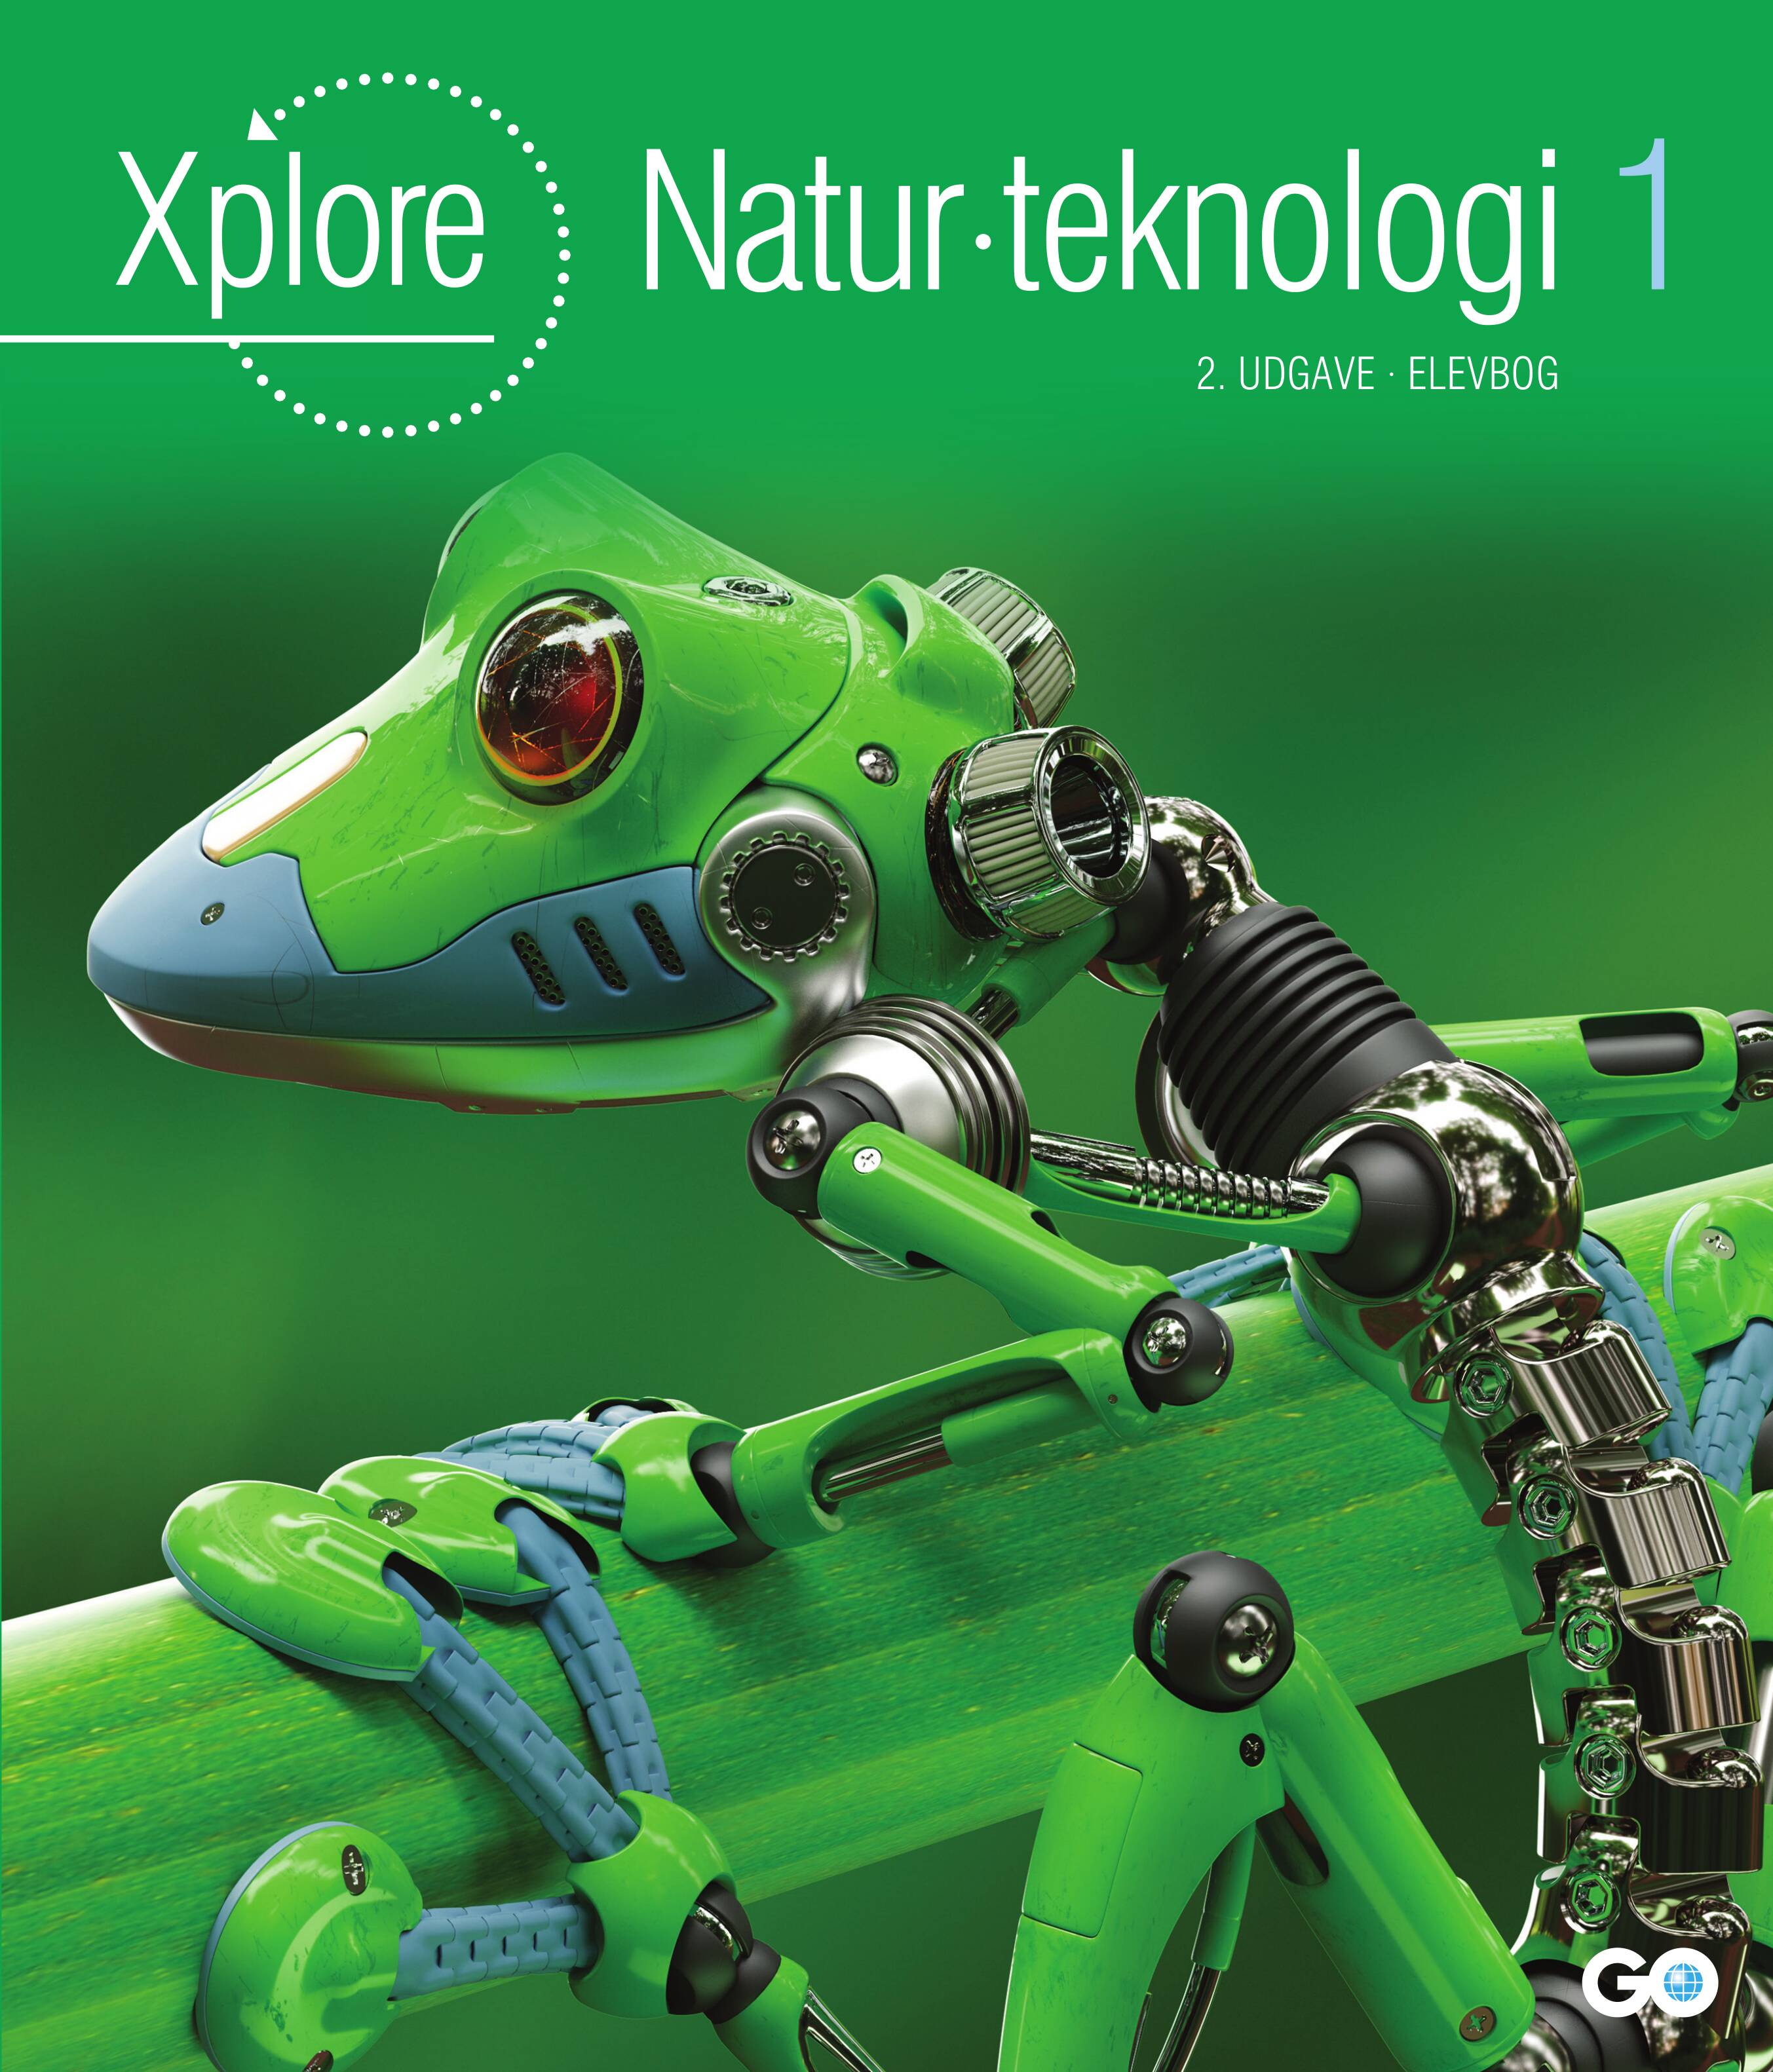 Xplore Natur/teknologi 1 Elevbog - 2. udgave